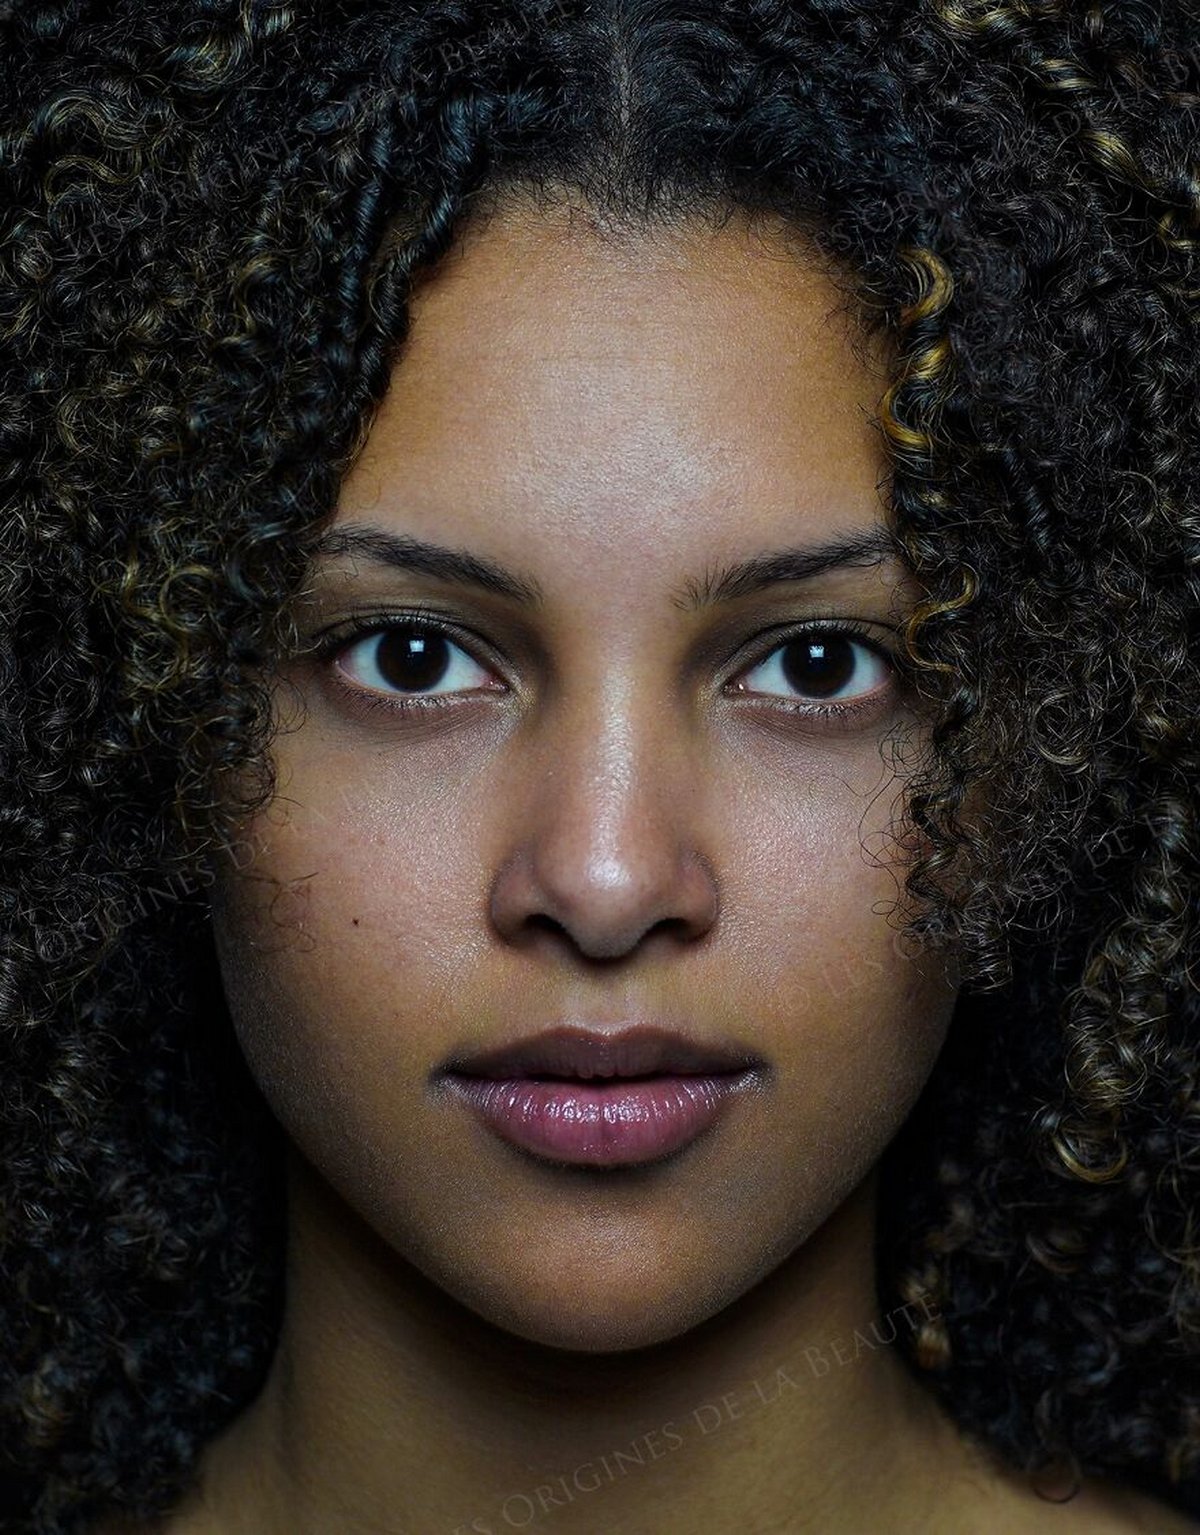 « Les origines de la beauté » montrent l’ampleur réelle de la diversité humaine en 30 portraits sublimes